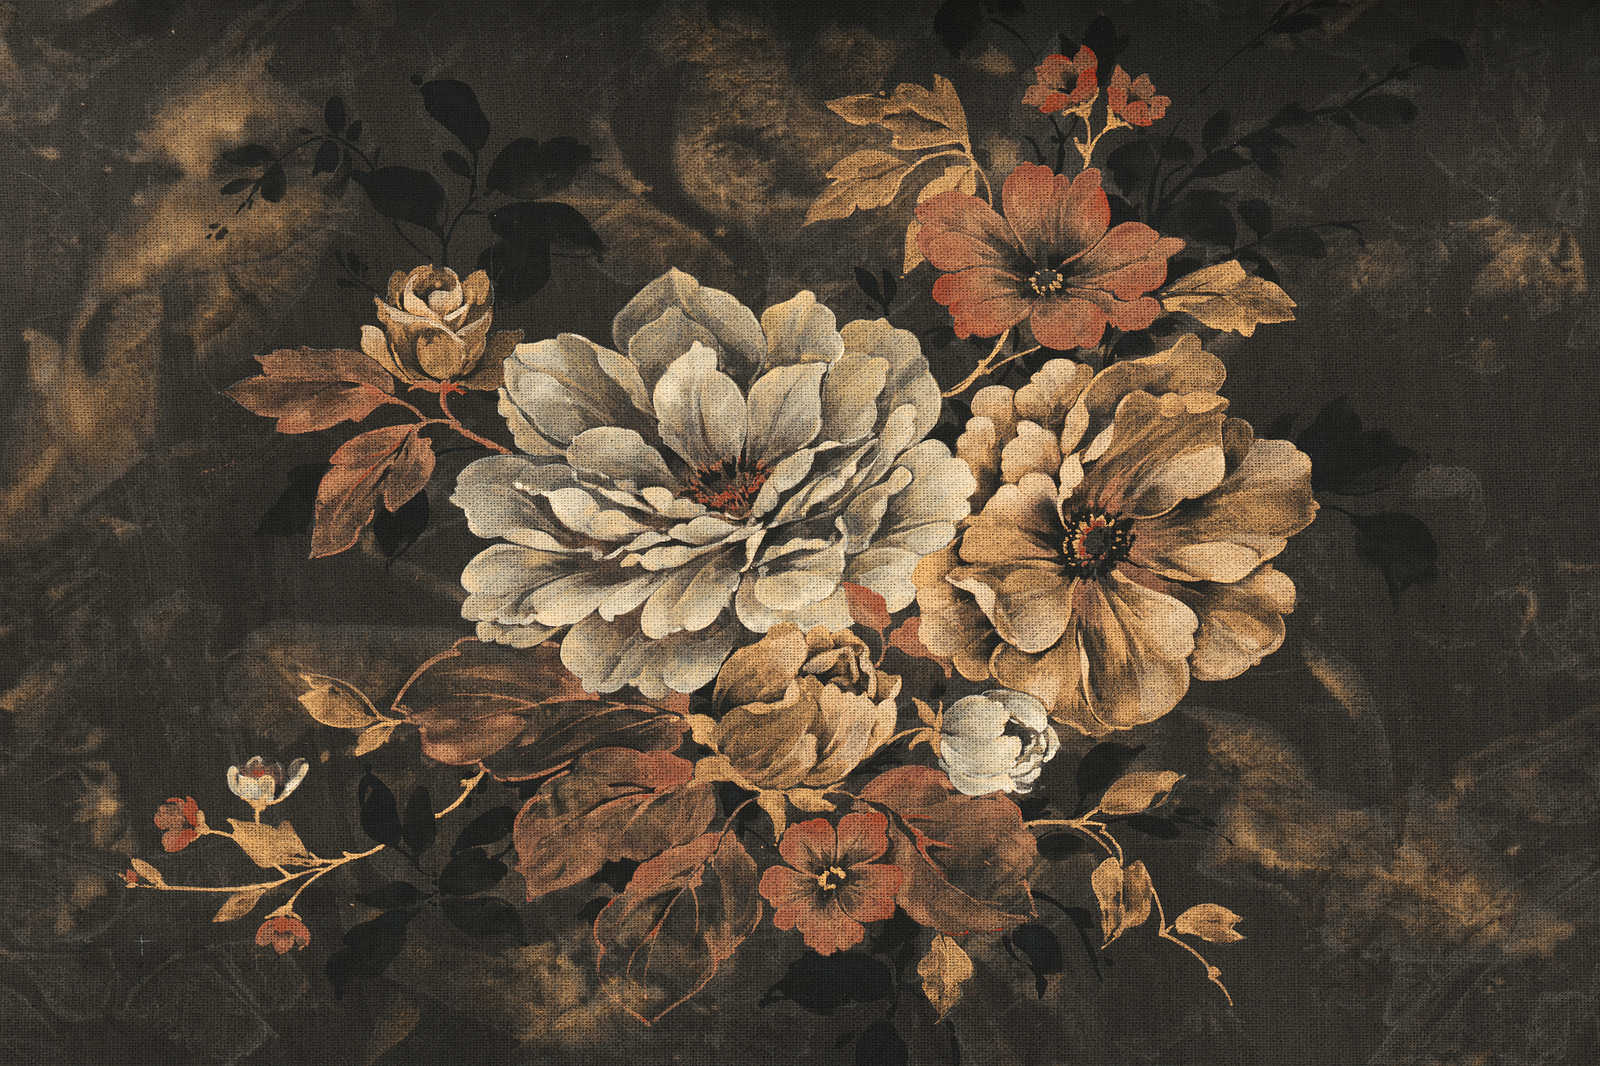             Quadro su tela con fiori, pittura a olio in stile vintage - 1,20 m x 0,80 m
        